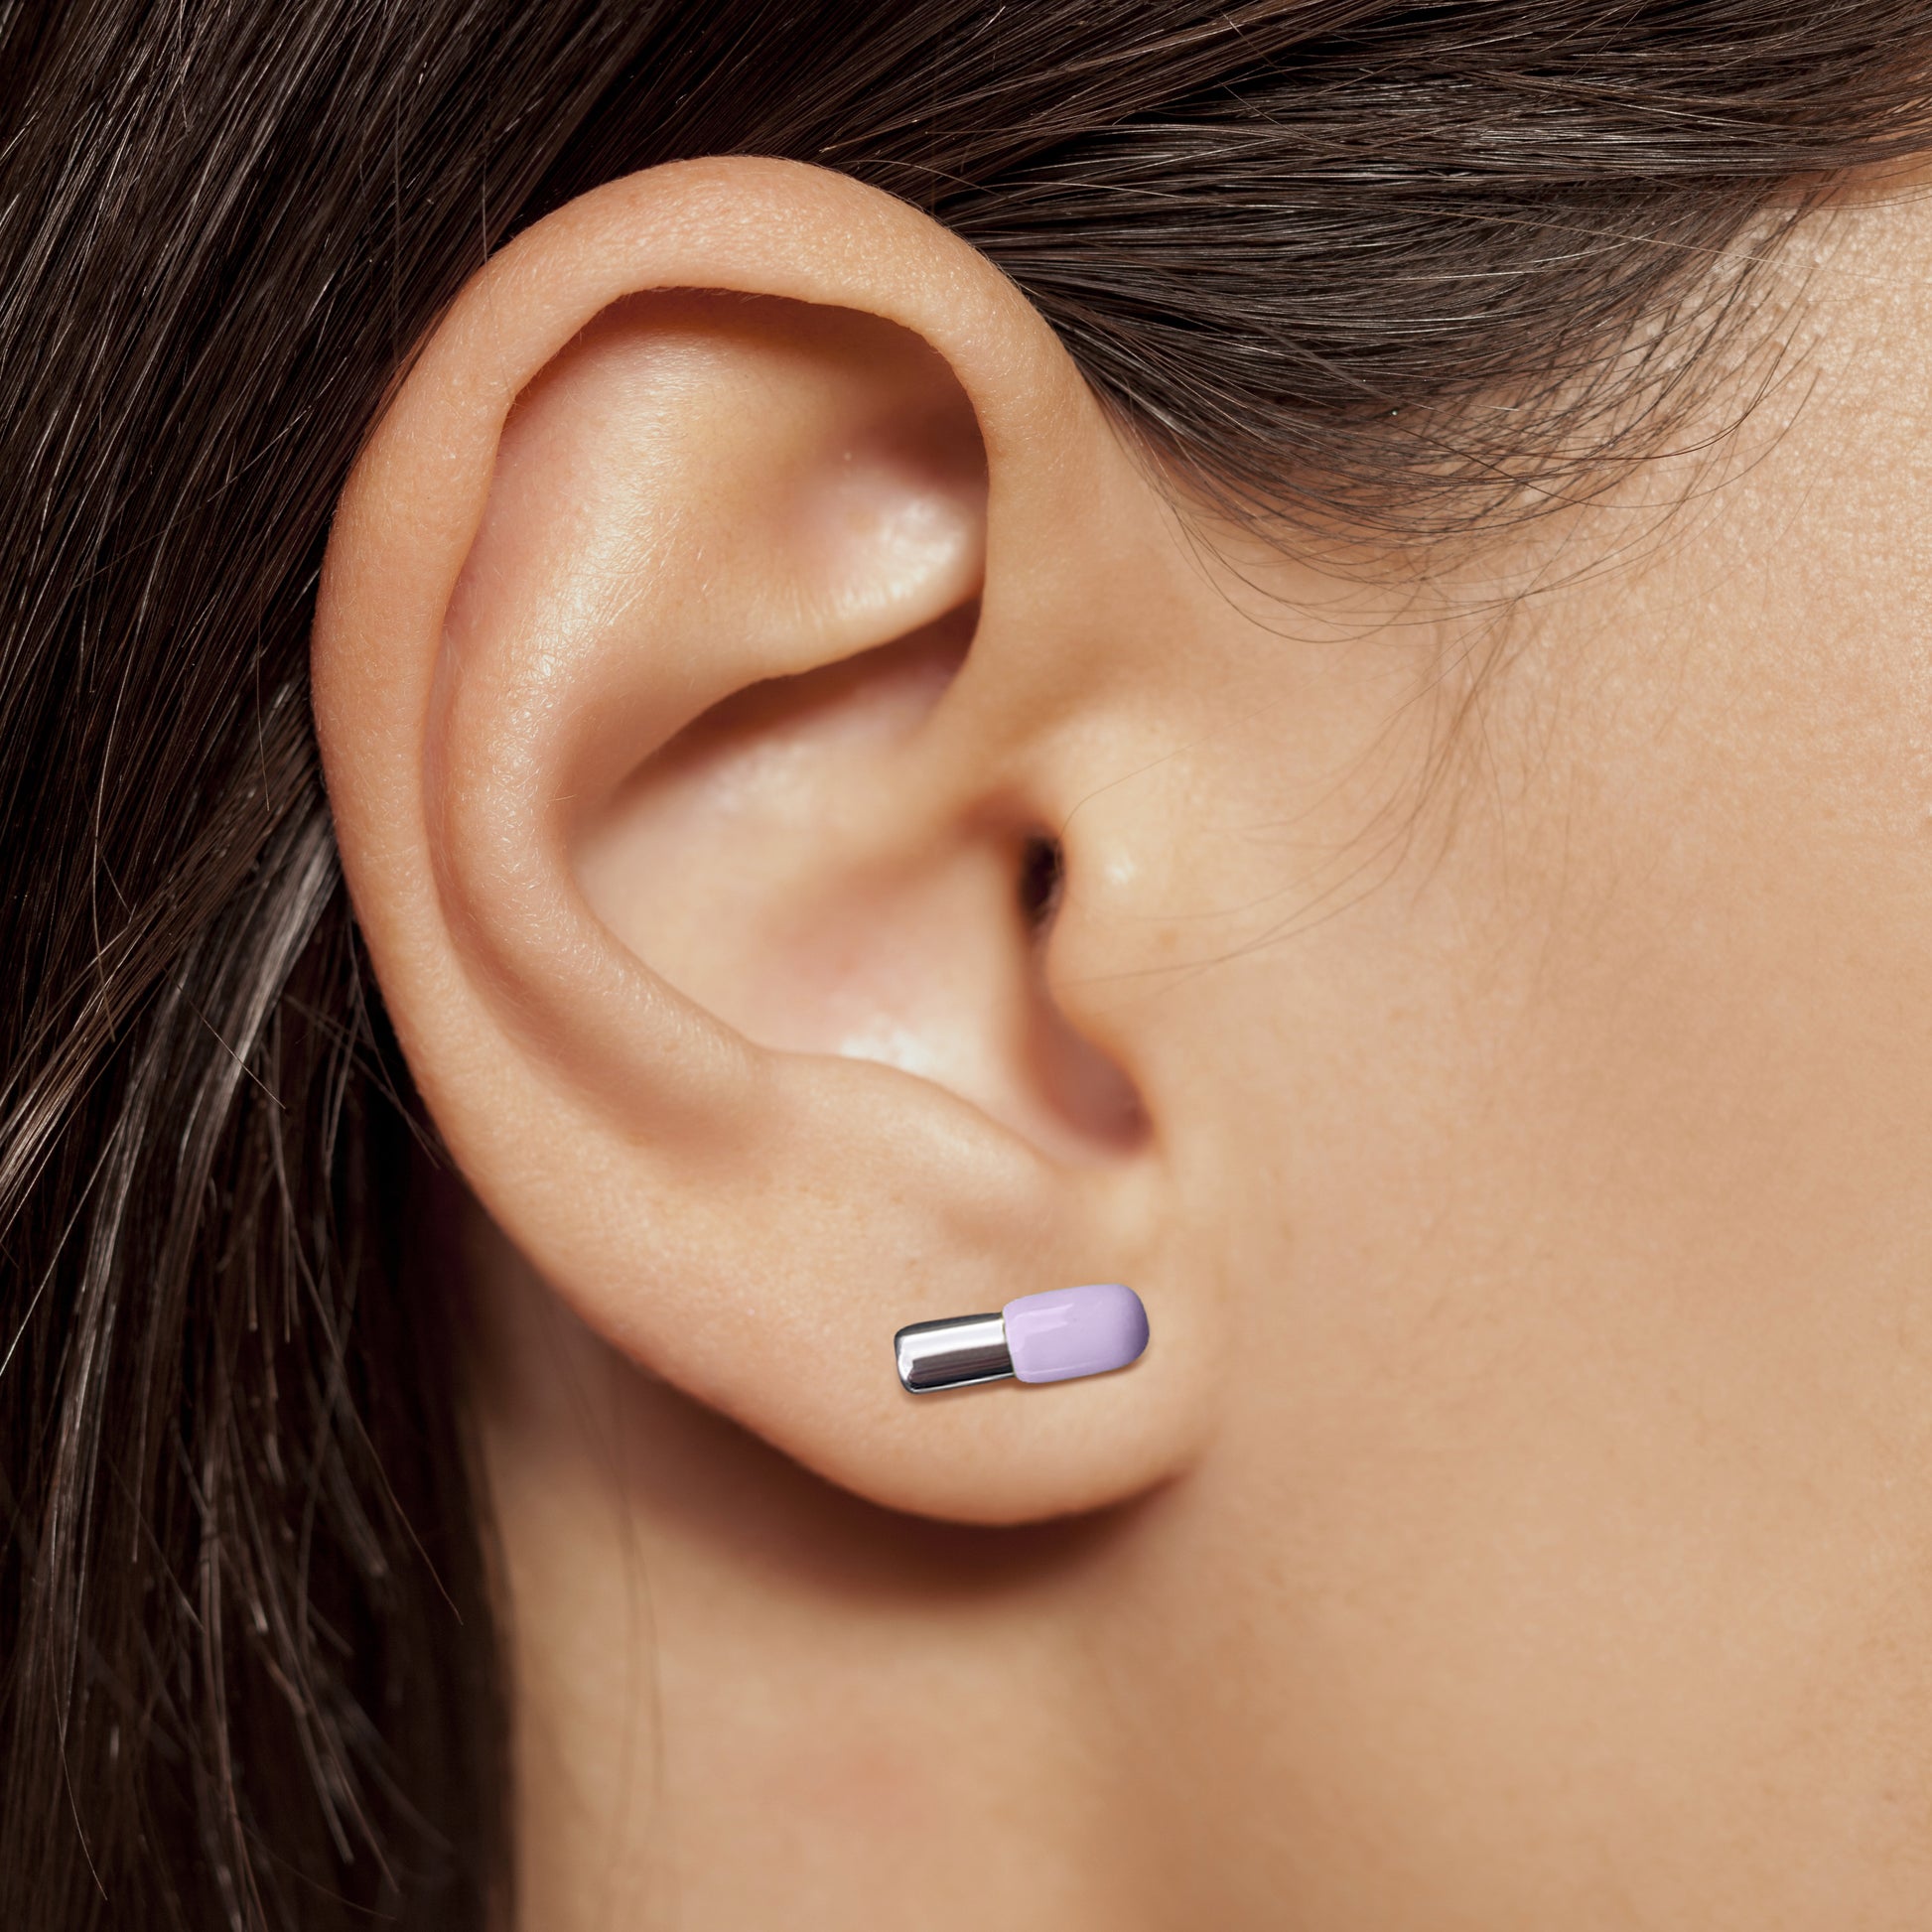 Silver and purple enamel pill earring in model